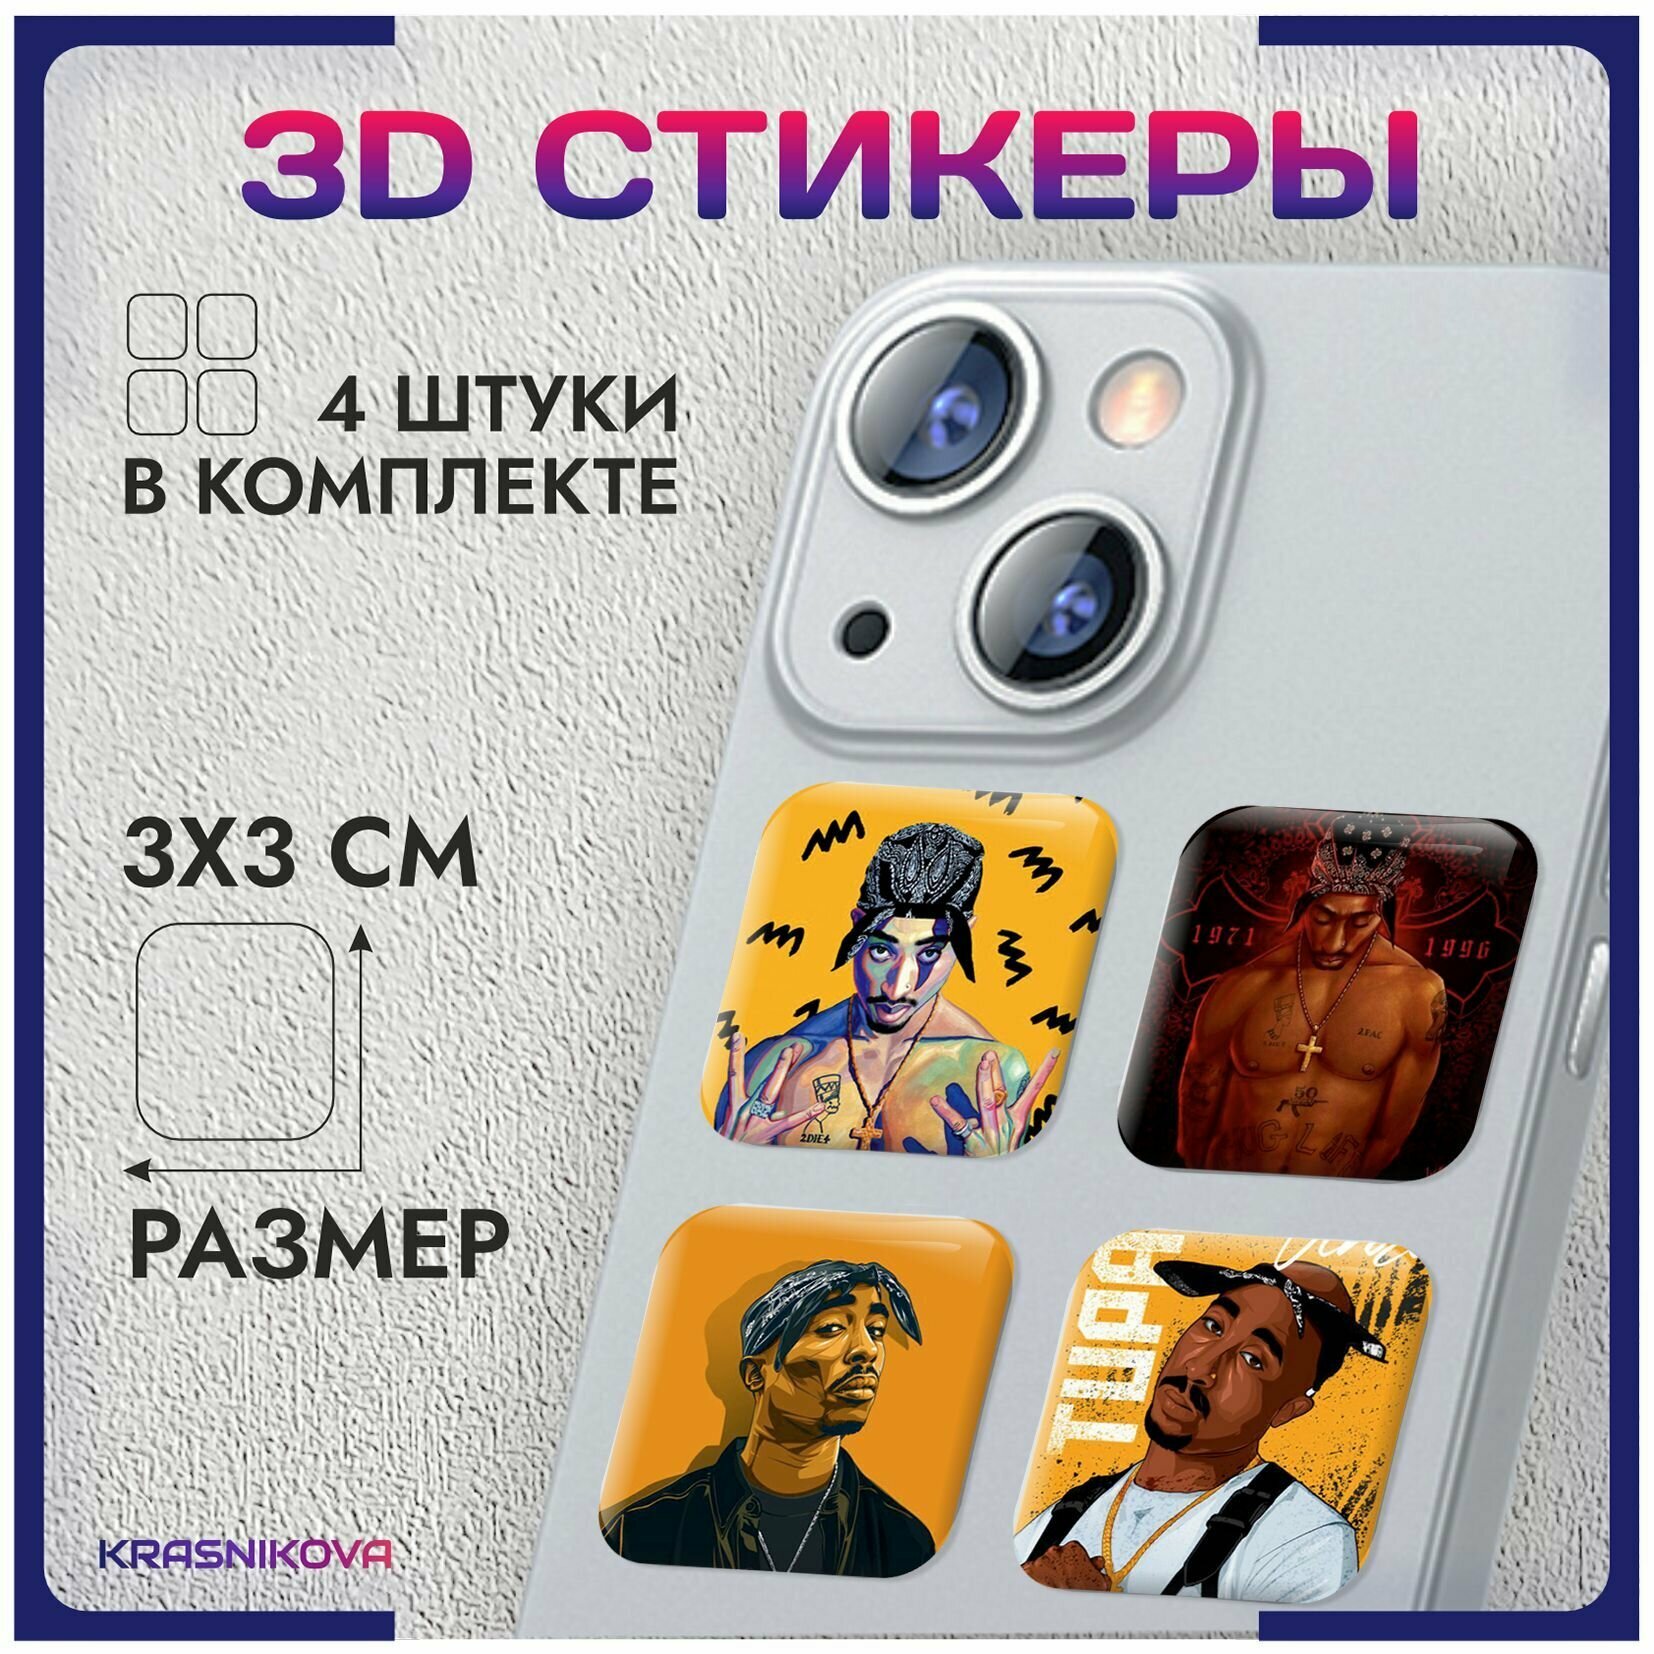 3D стикеры на телефон объемные наклейки тупак 2pac реп